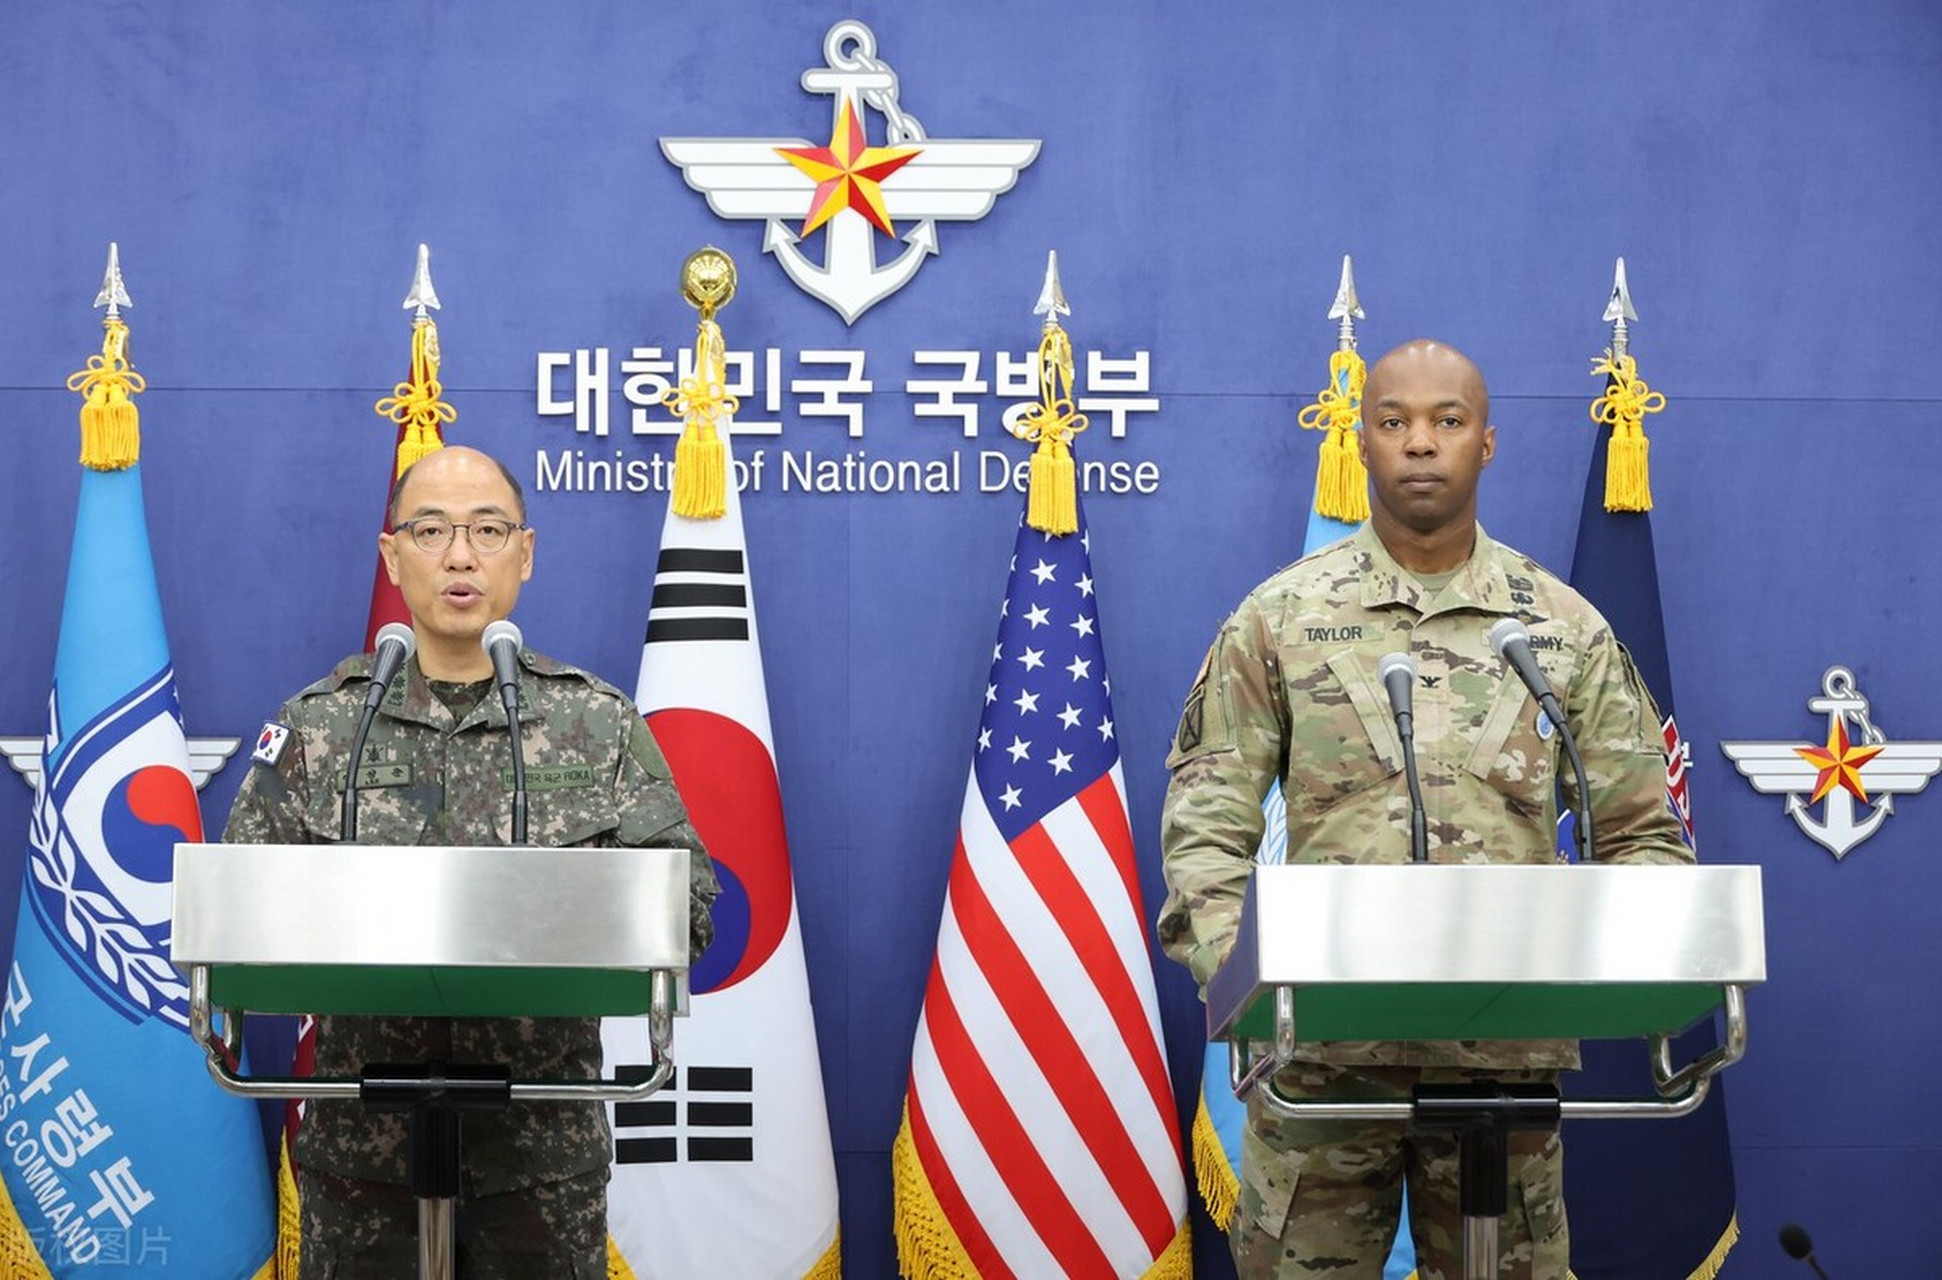 当地时间8月14日,韩国联合参谋本部通报称,韩国国防部和美国国防部